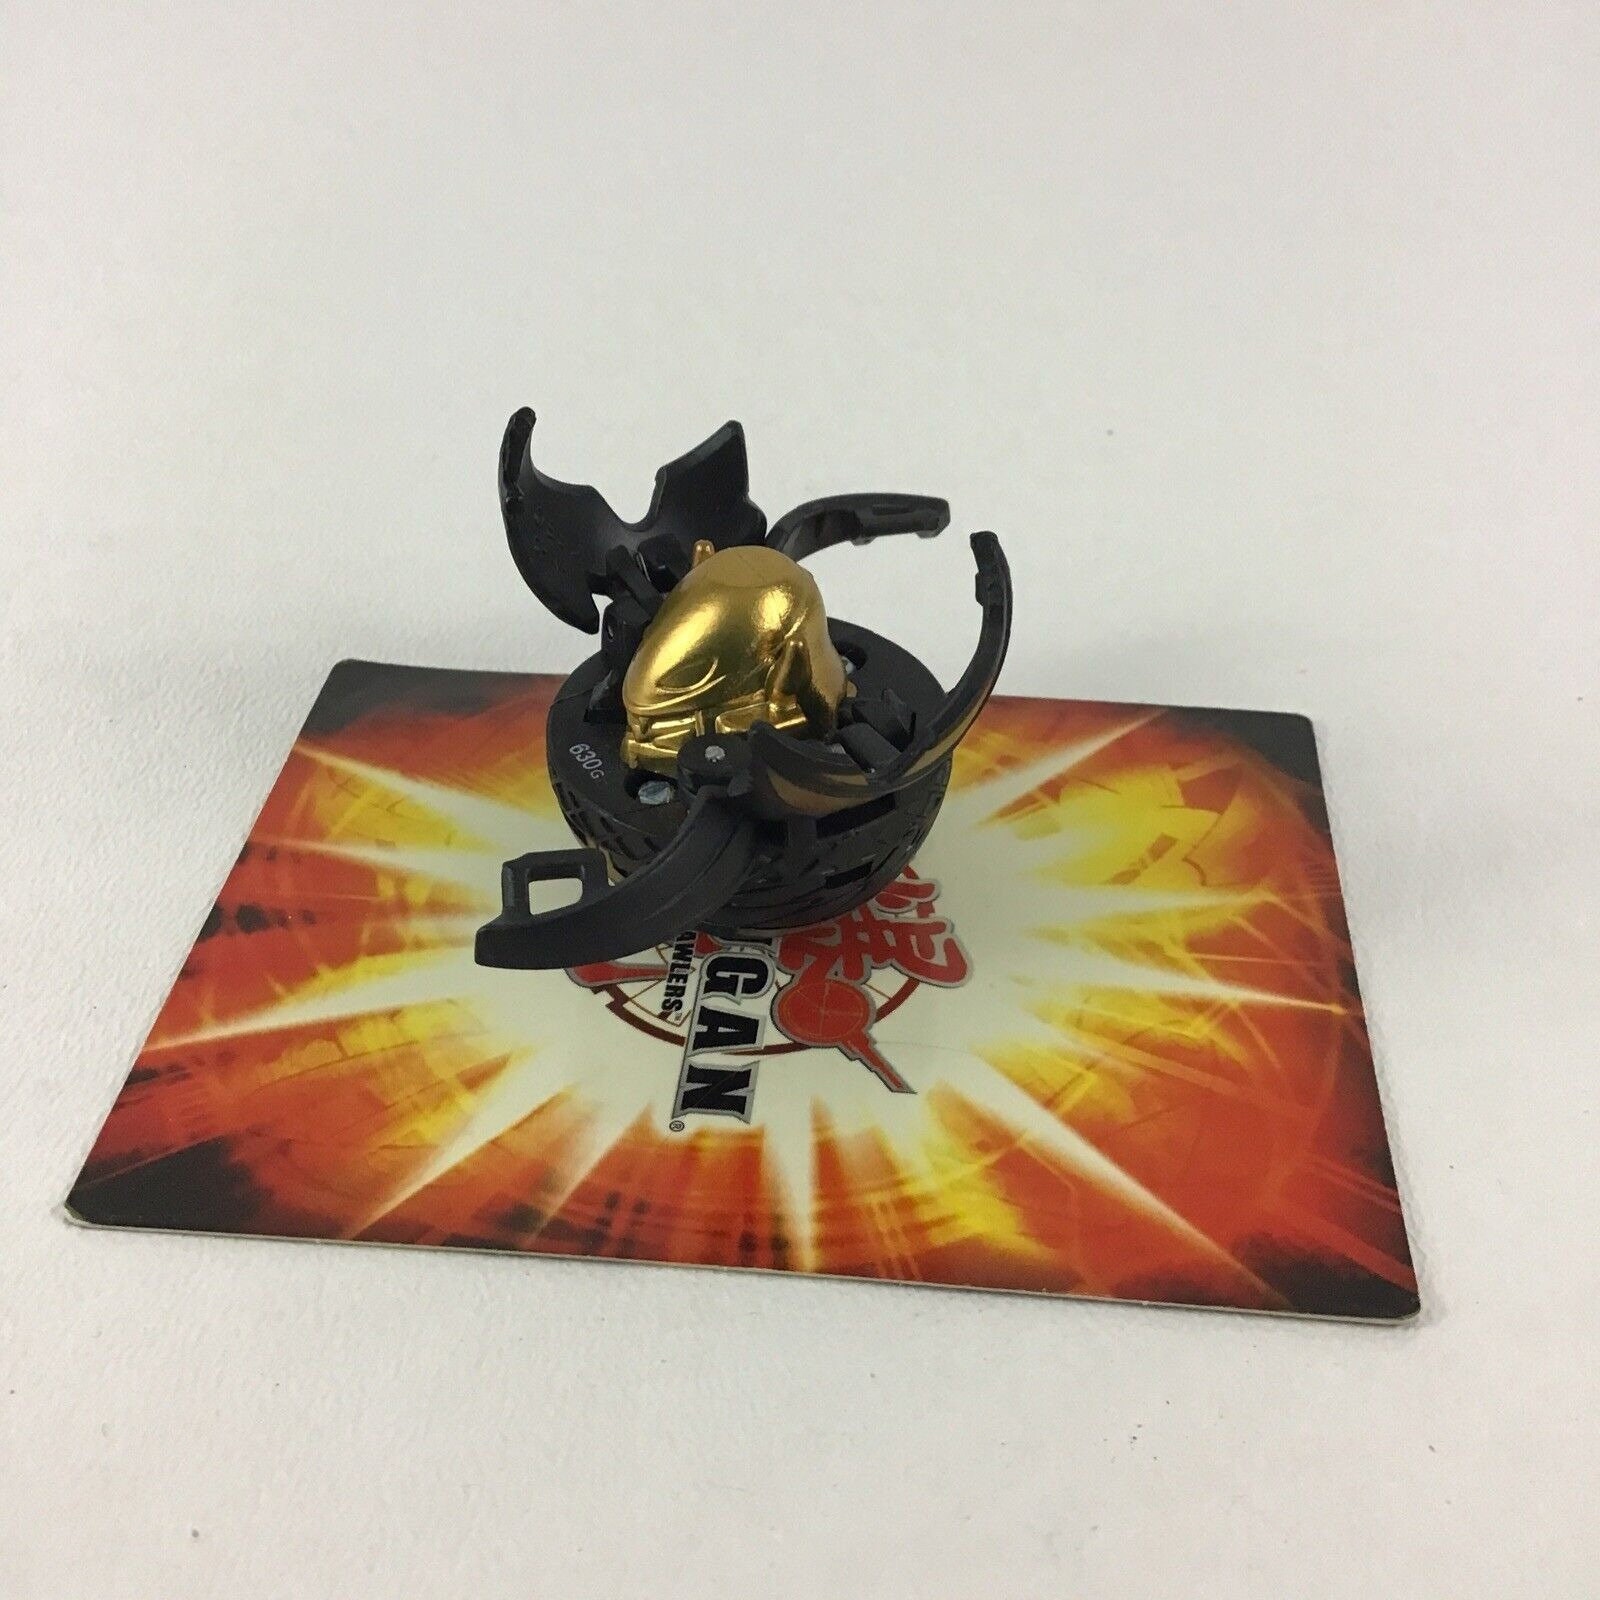 Bakugan Preyas Diablo 630G Black Gold Variant Game Toy Figure Ball Spin  Master -  Singapore